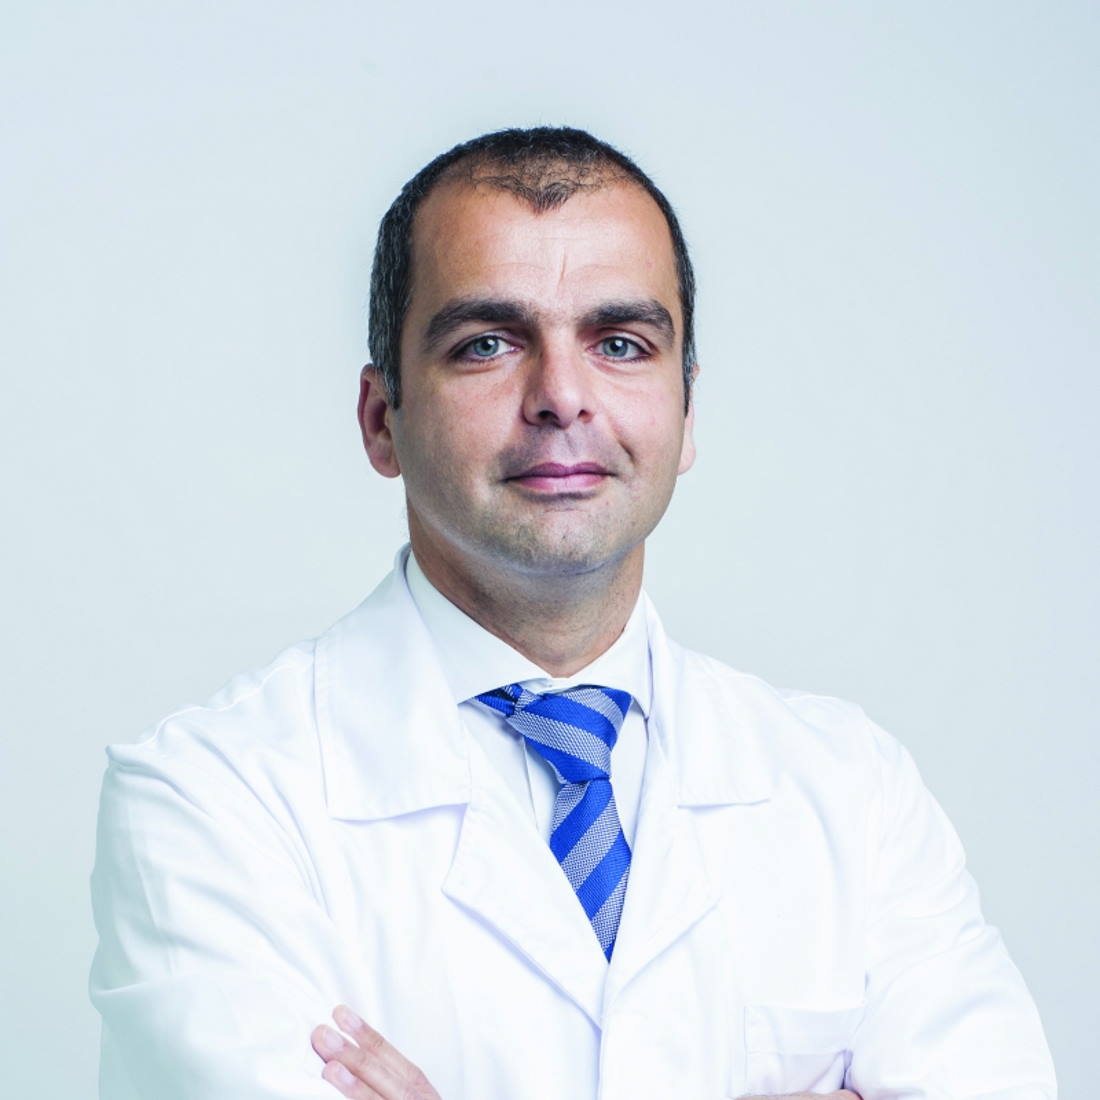 Dr. Rui Borges